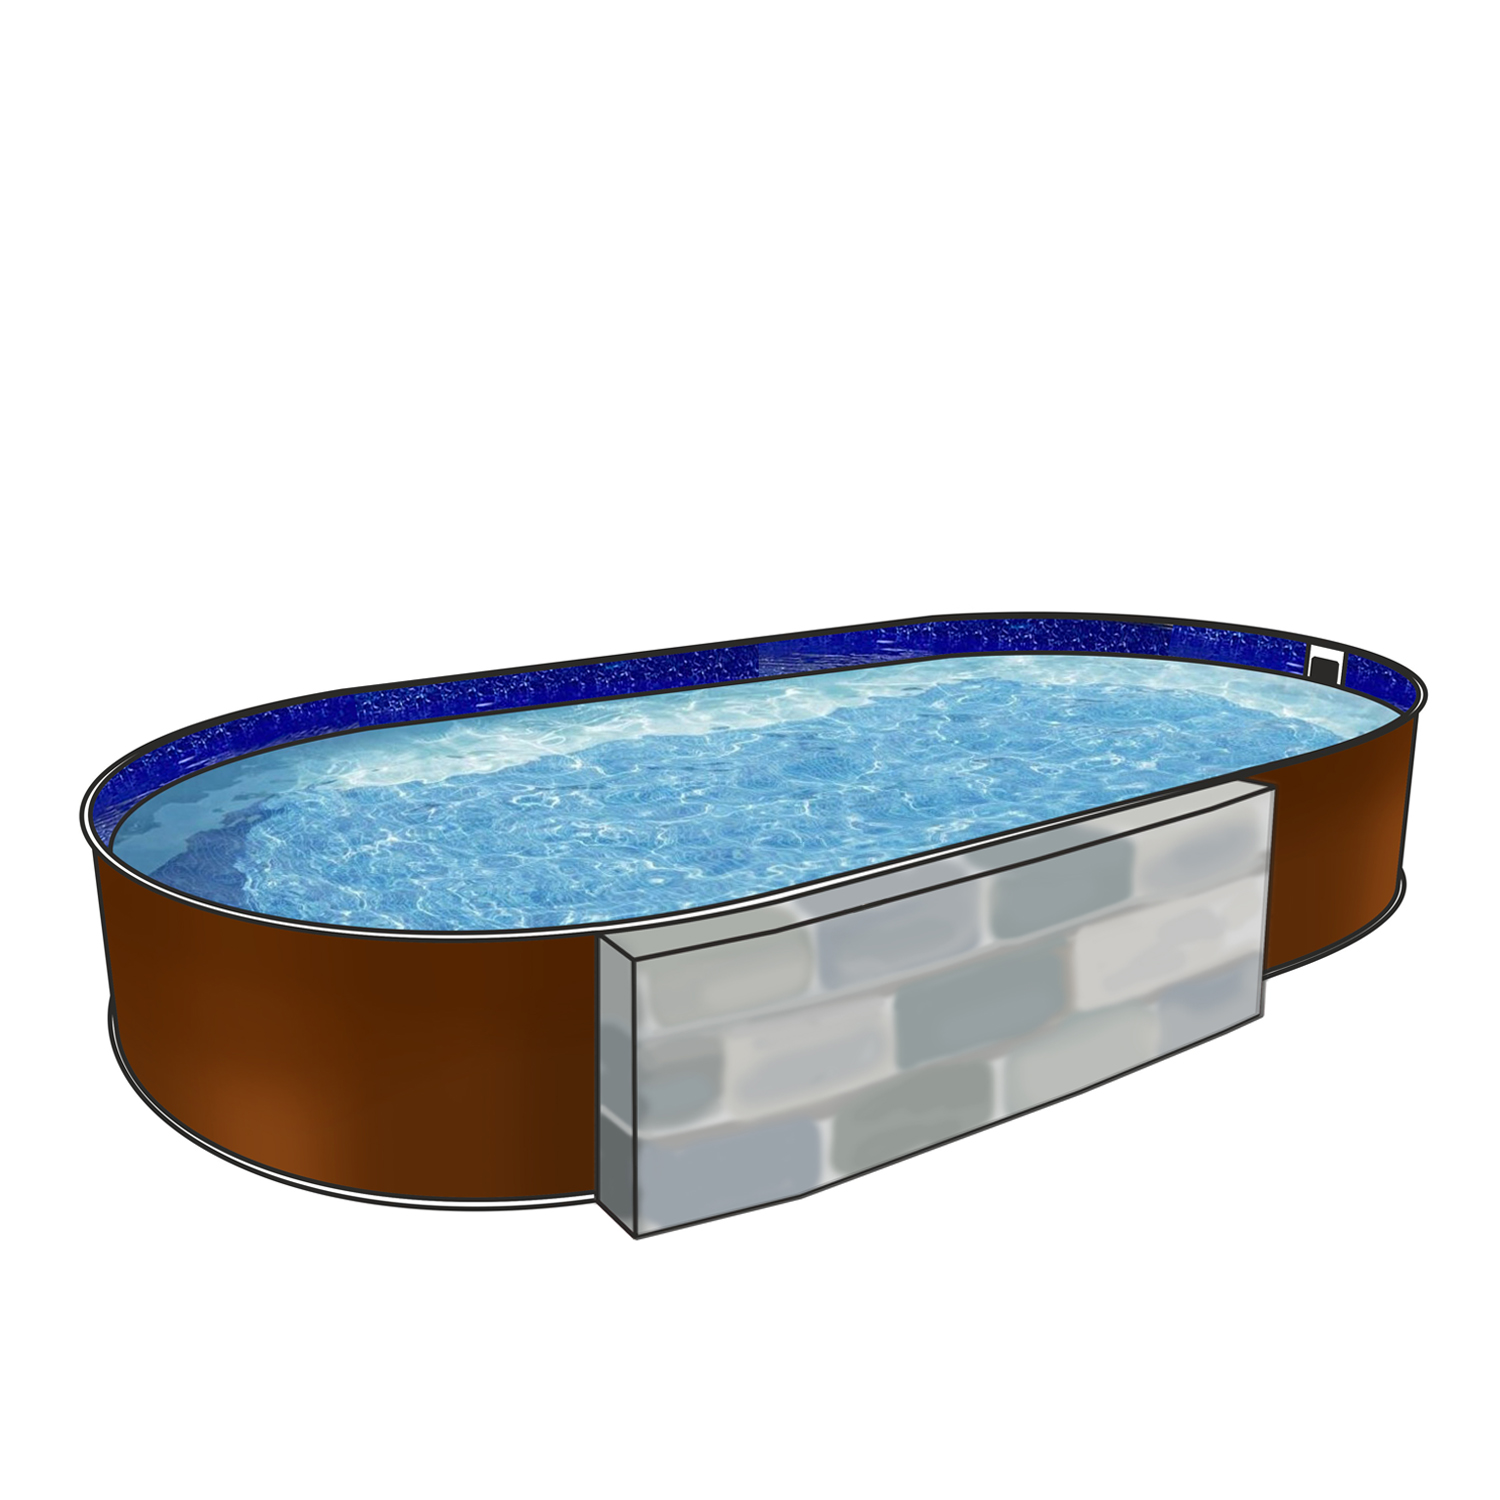 Каркасный бассейн Лагуна ТМ836_2 800х350х125 см - купить в Москве, цены на Мегамаркет | 600013467170